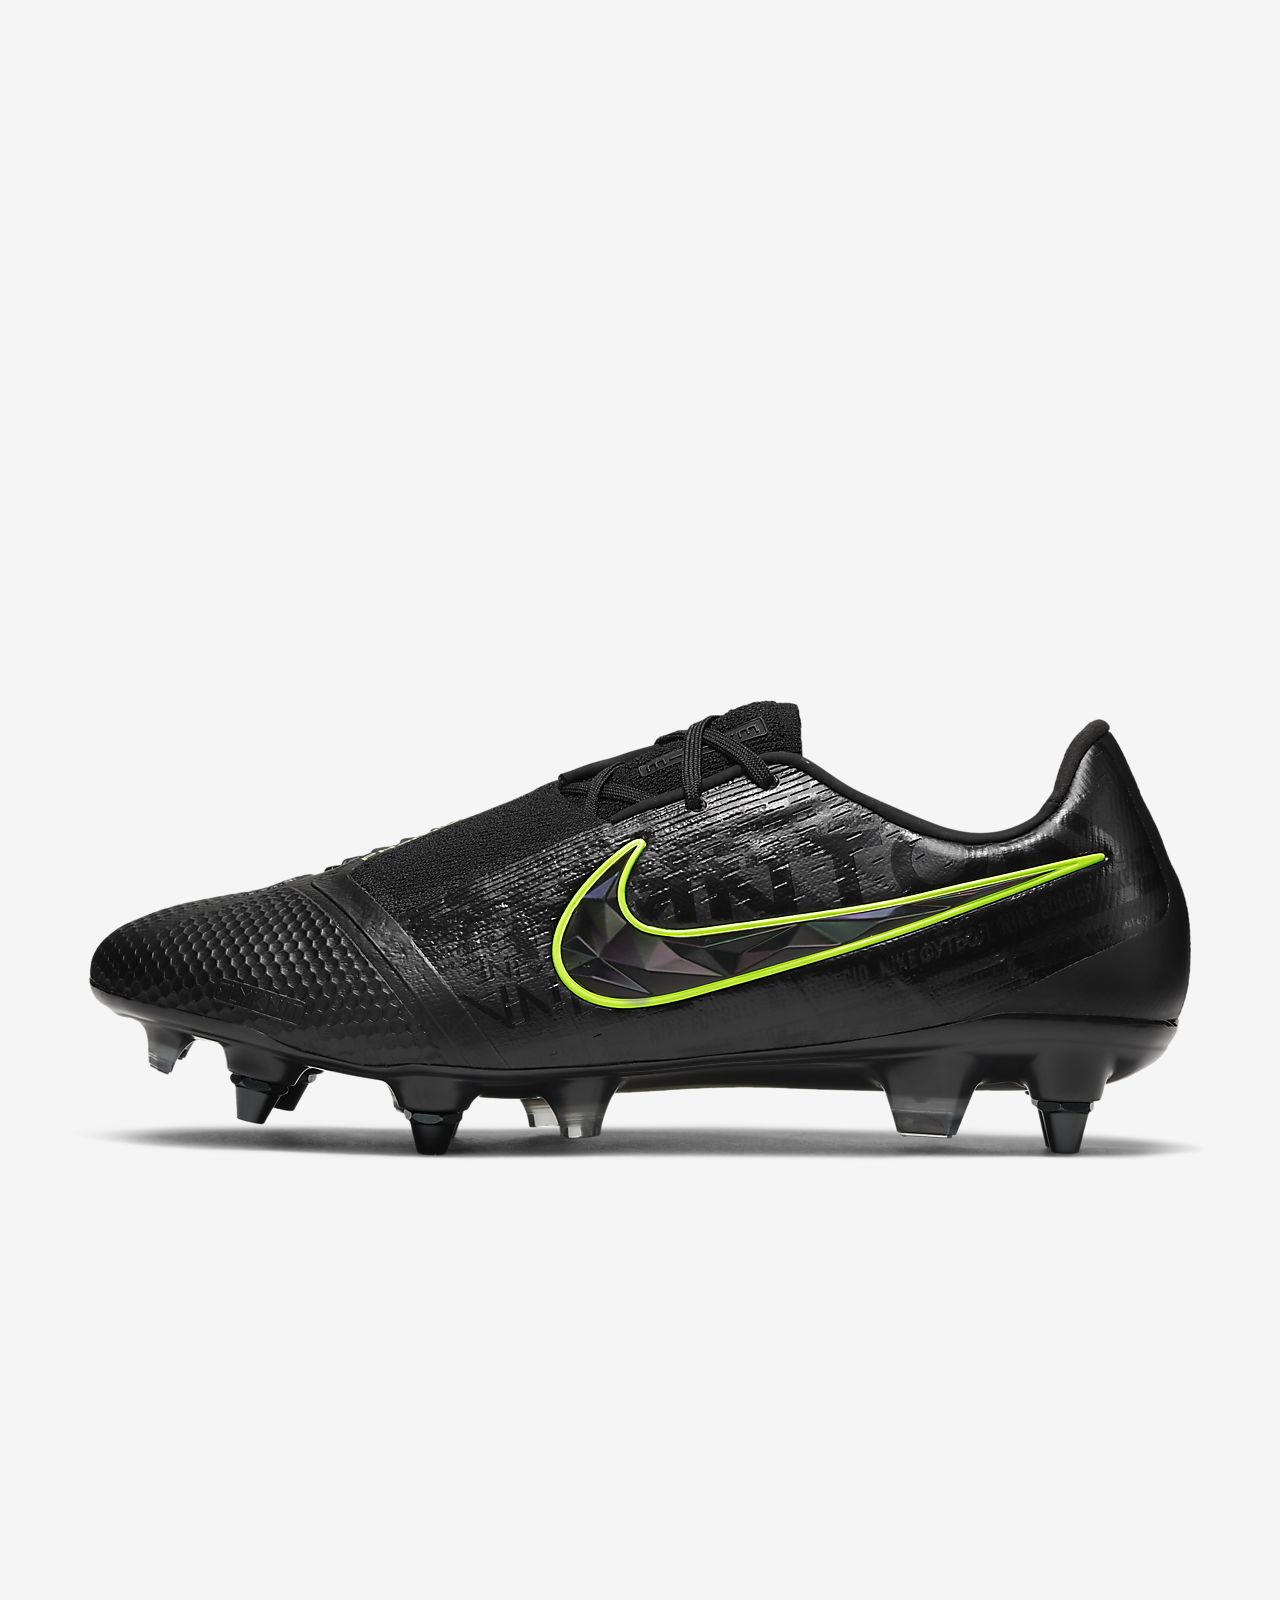 Jual Sepatu Football Nike phantom venom academy fg black